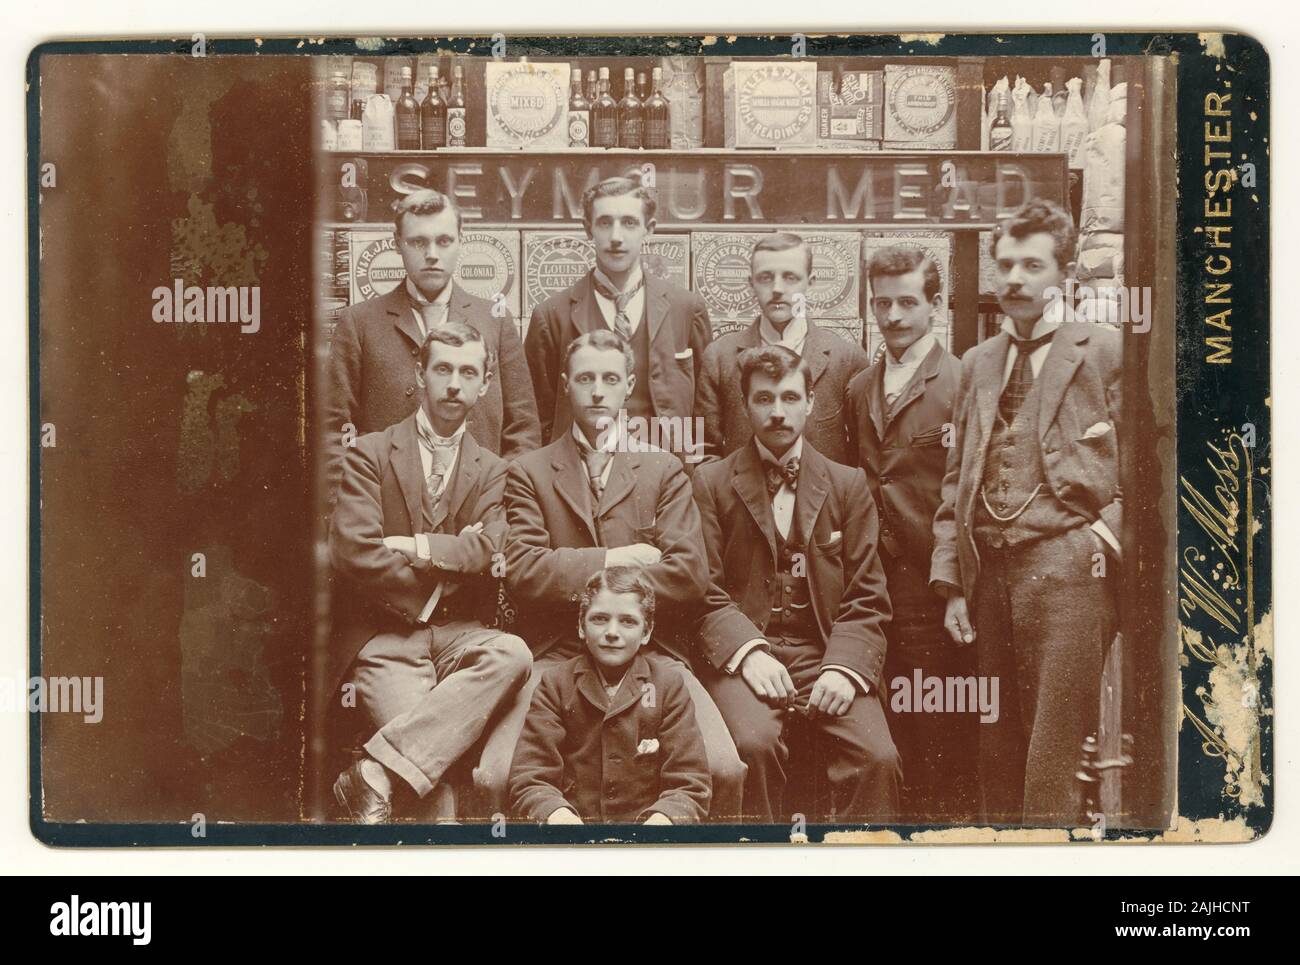 Original-Schrankkartenfoto von viktorianischen Einzelhändlern, Einzelhandelsmitarbeitern und Managern des Lebensmittelunternehmens Seymour Mead, Manchester, England, Großbritannien um 1900 Stockfoto